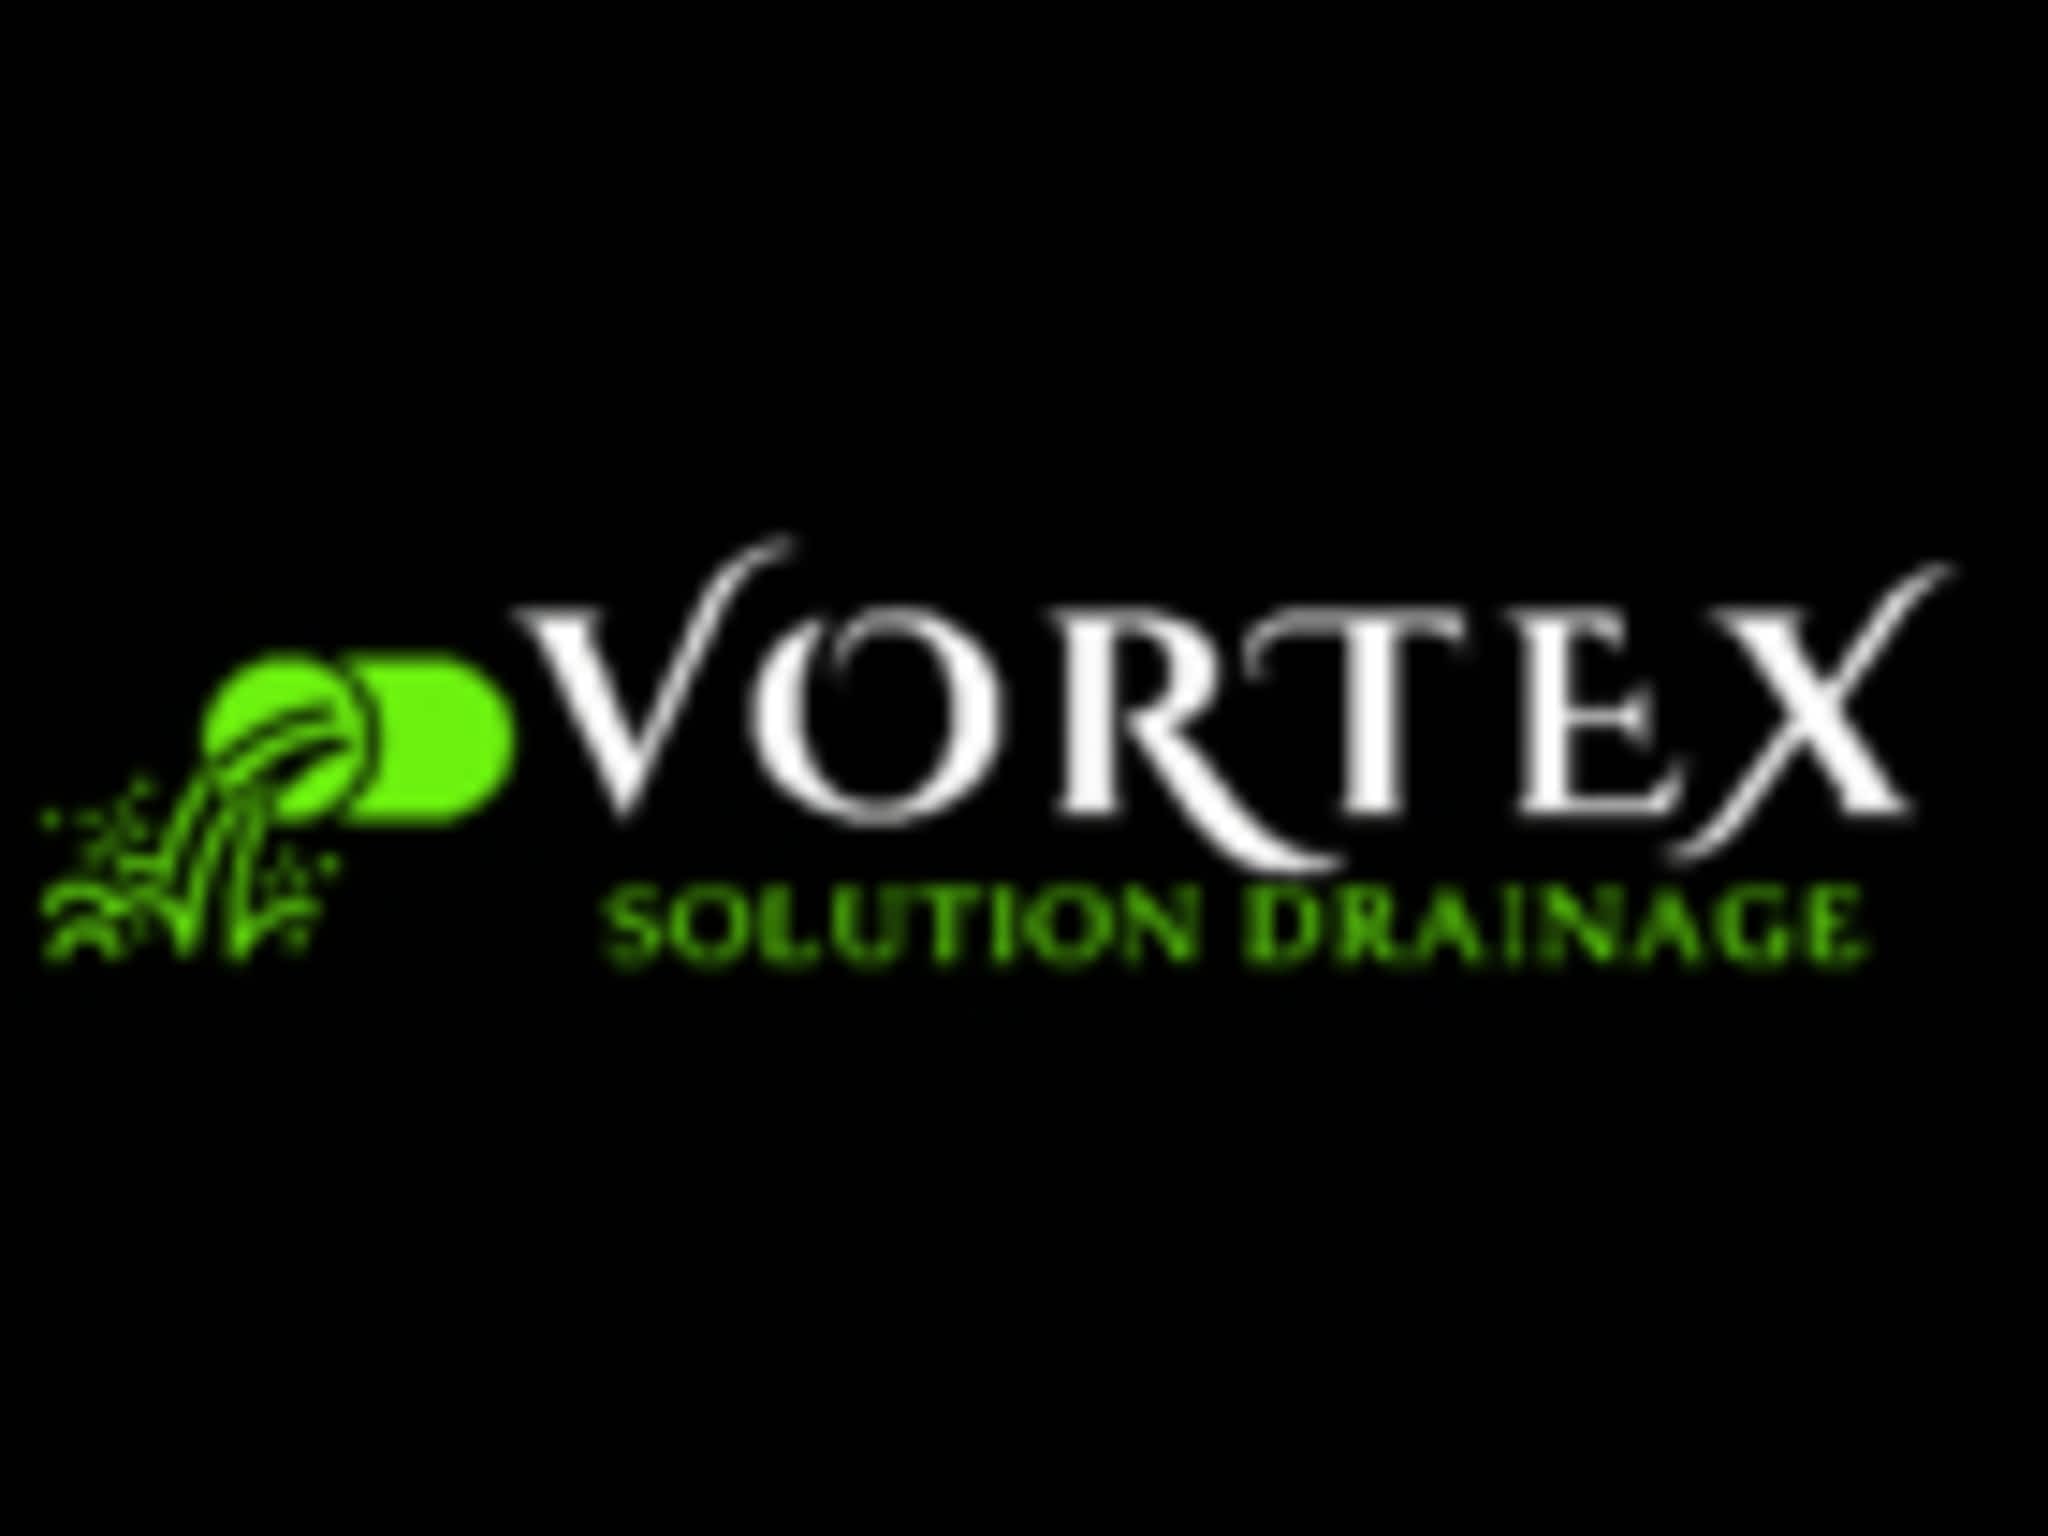 photo Vortex Solution Drainage